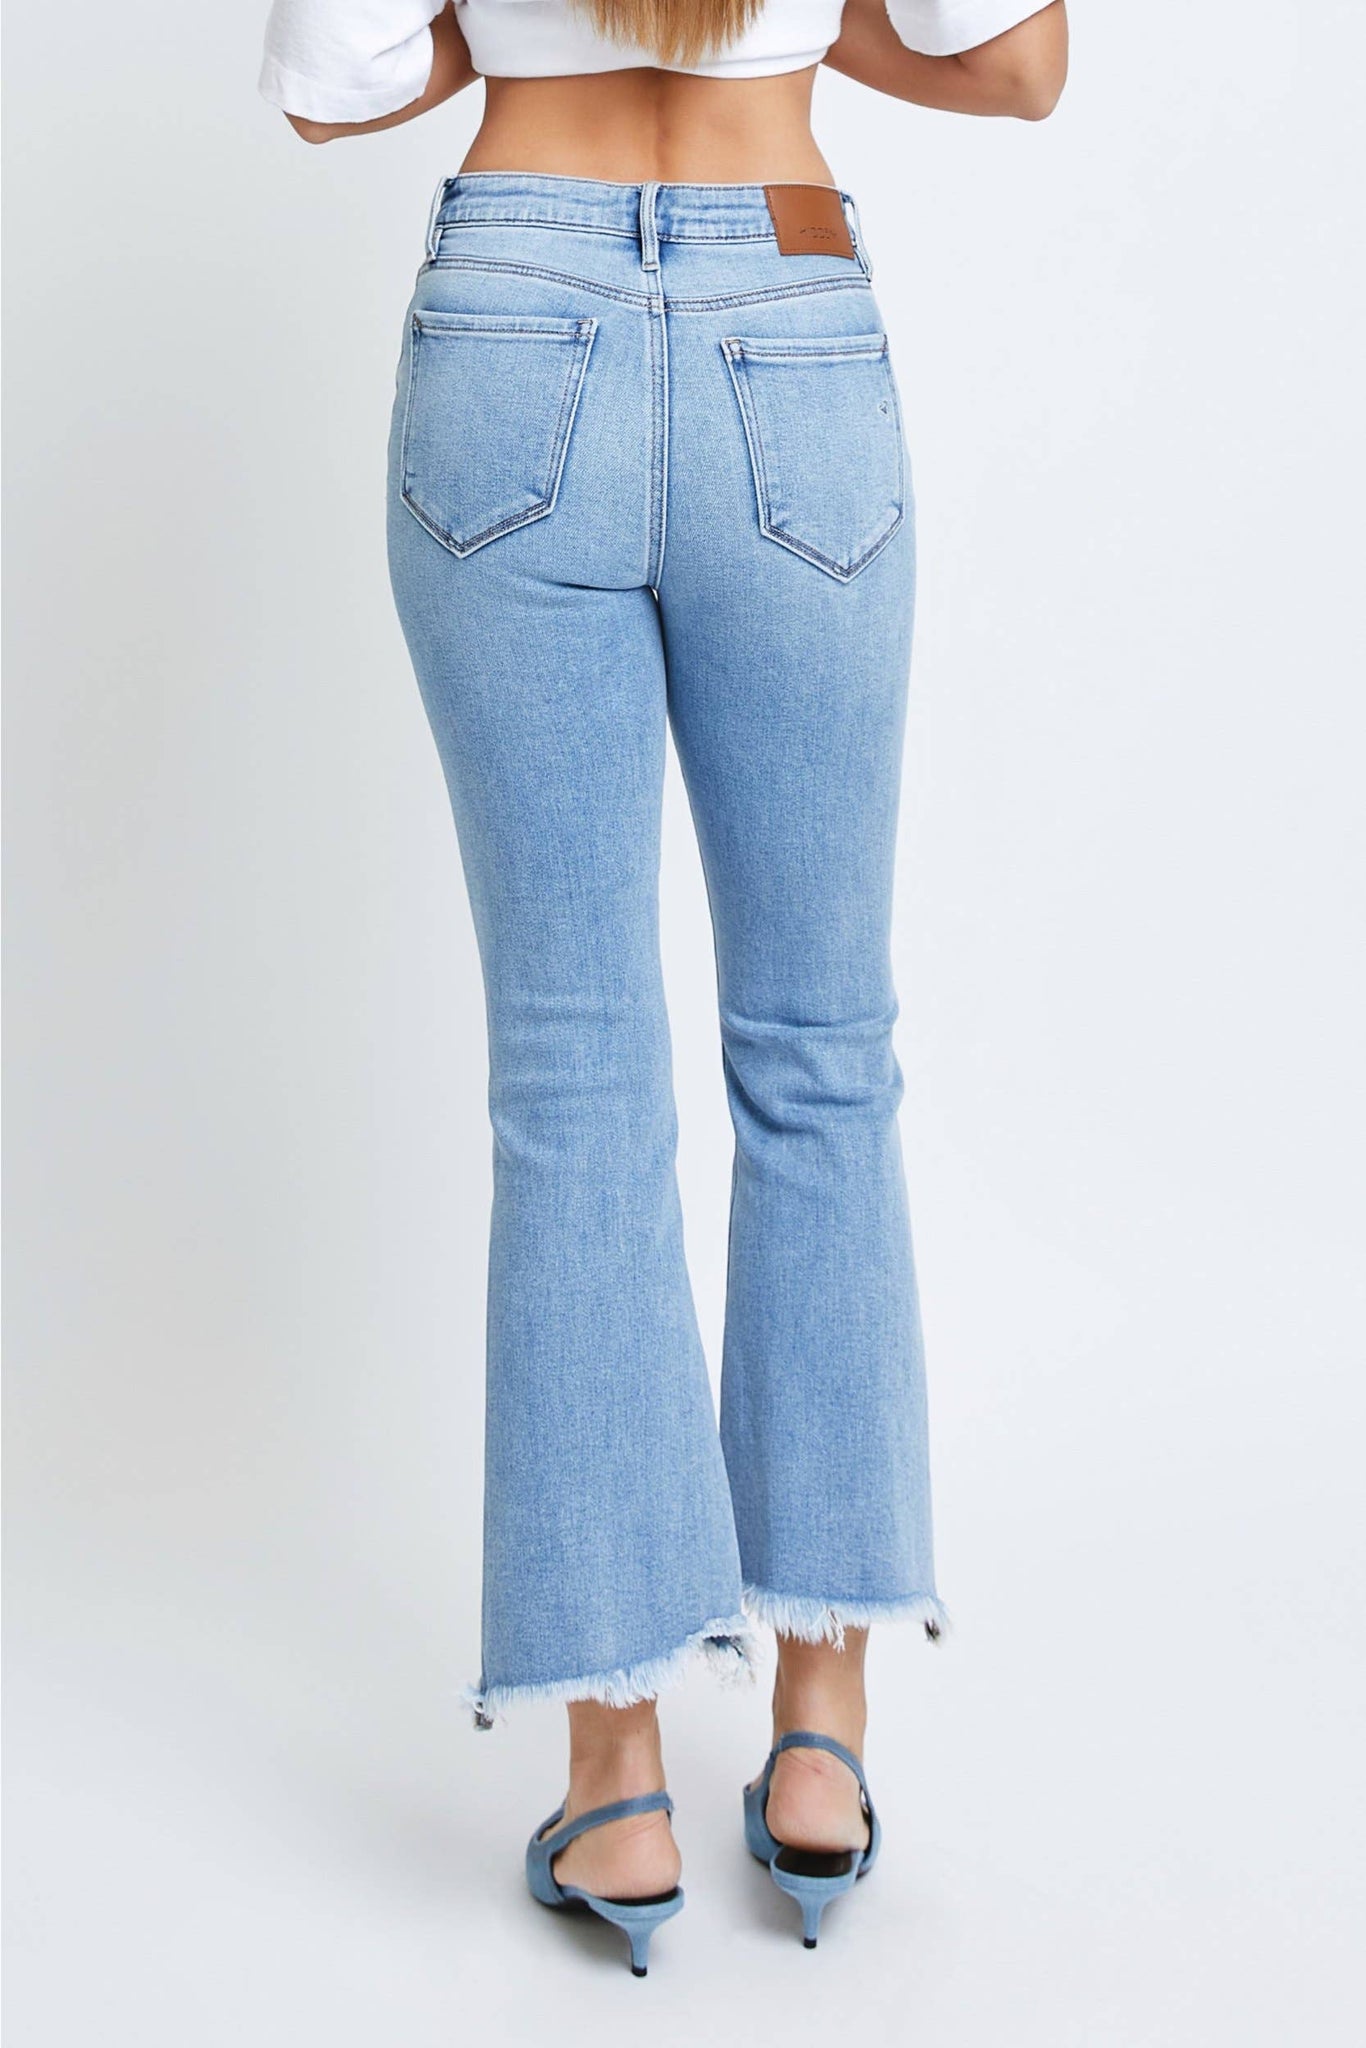 Hidden Jeans - Medium Wash Clean Frayed Hem Stretch Crop Flare